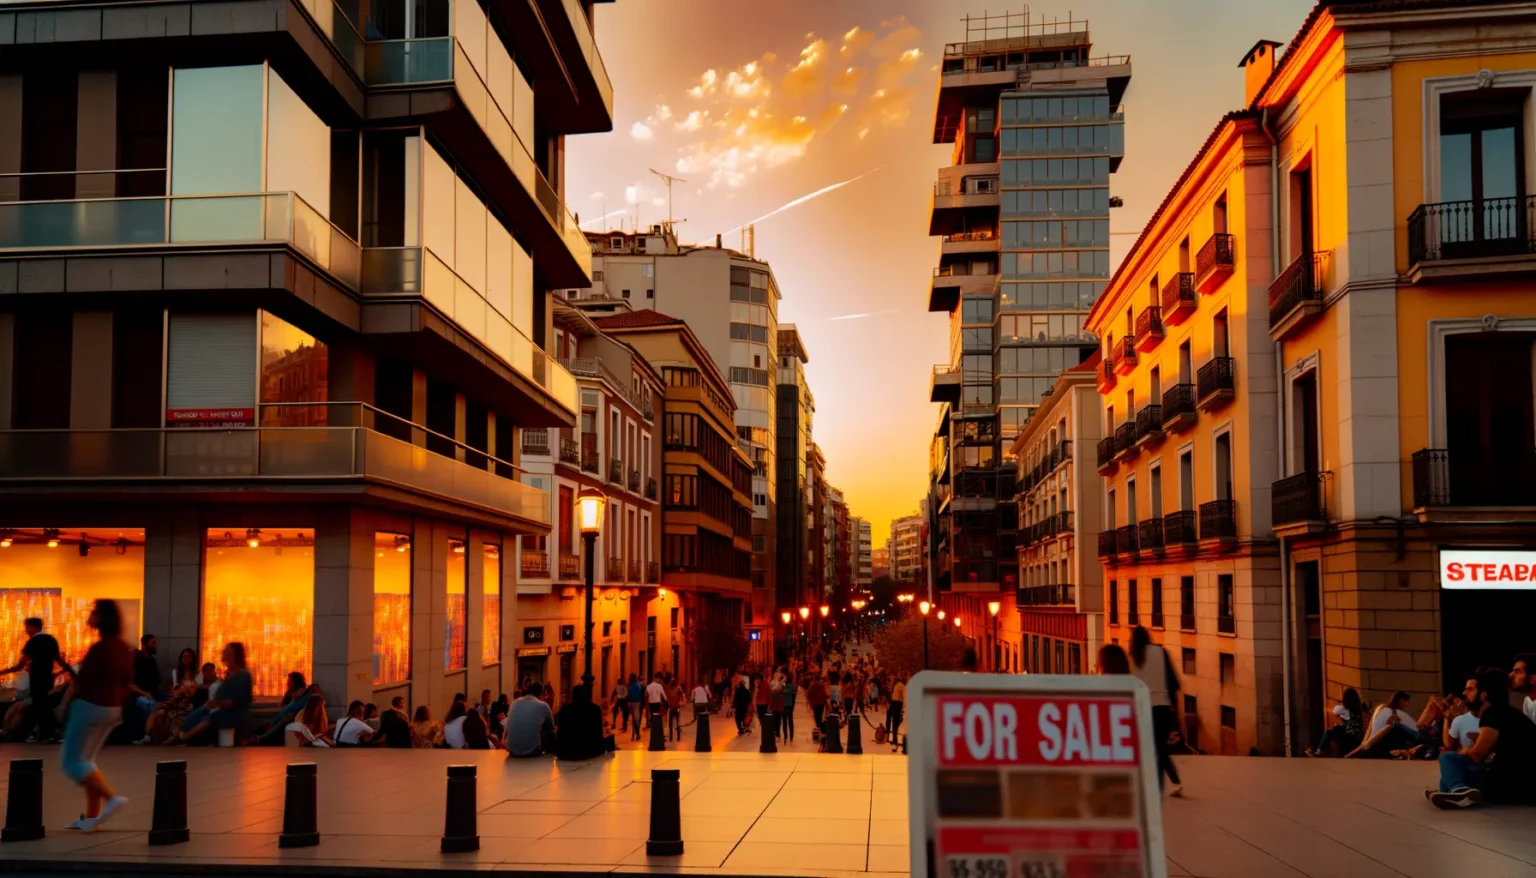 Sonnenuntergangszenario in einer belebten Stadtstraße mit modernen und traditionellen Gebäuden. Menschen gehen und sitzen in Gruppen, genießen den Abend. Himmel mit orange-gelben Farben und leichte Wolken. Ein Schild mit der Aufschrift "FOR SALE" im Vordergrund.